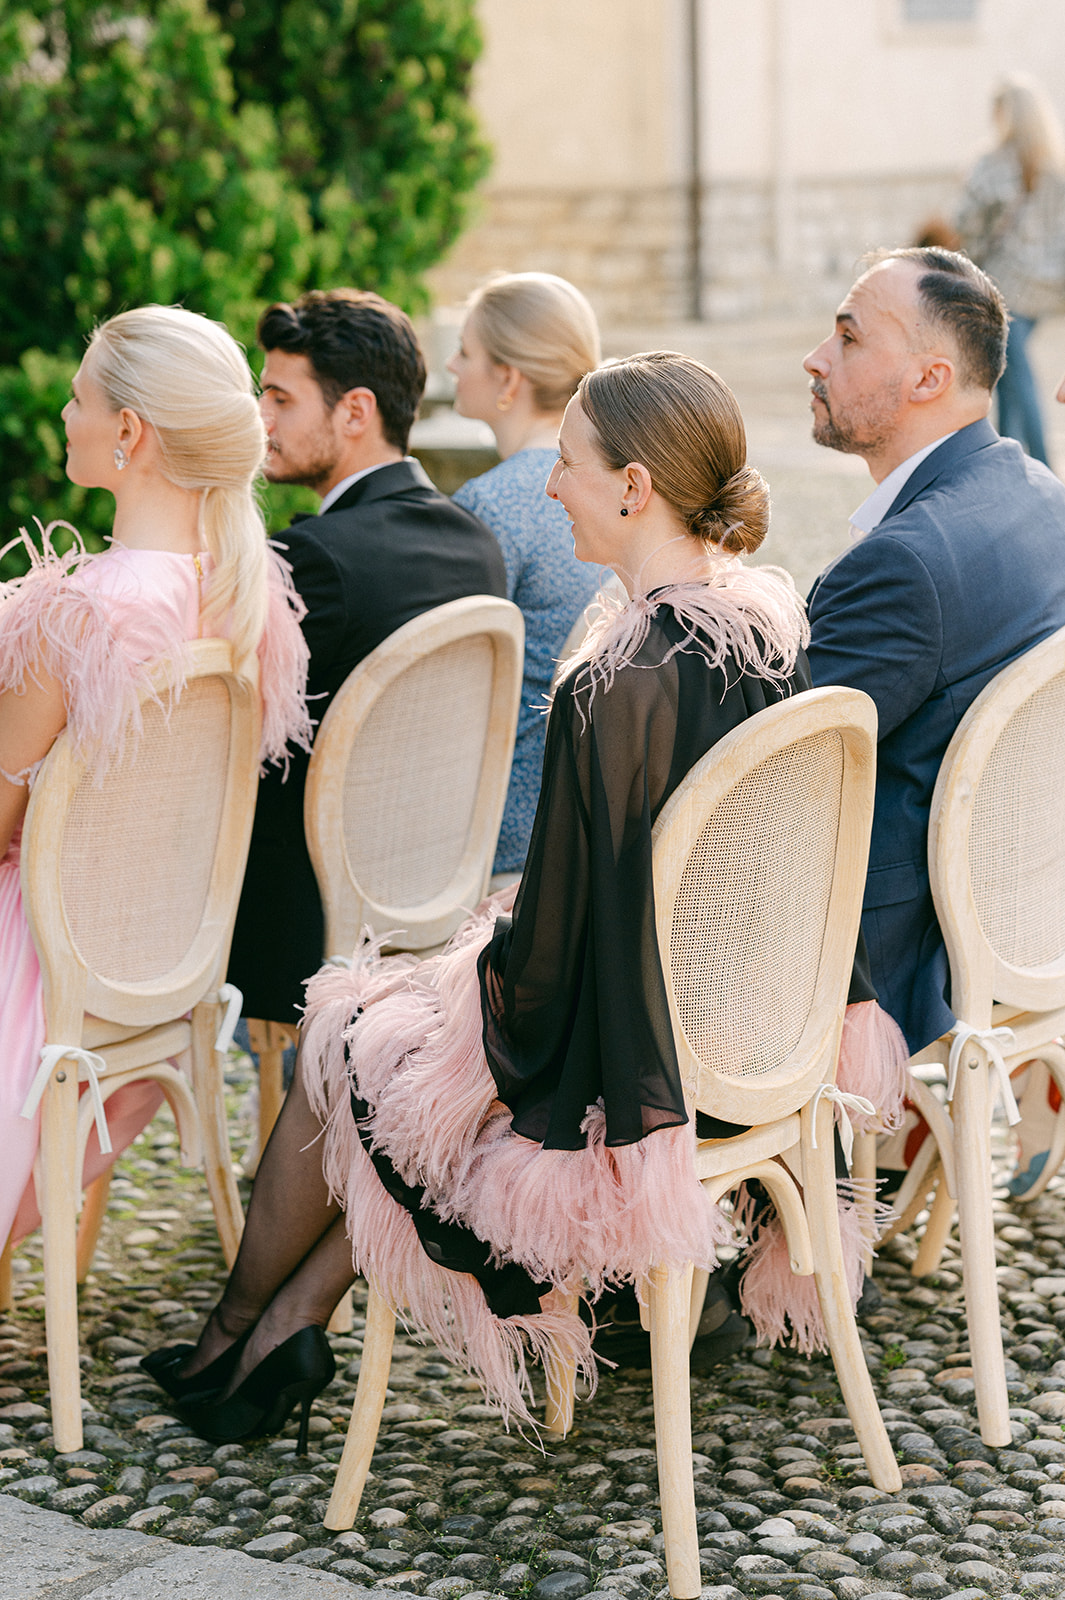 Black-tie garden wedding ceremony in Italy.